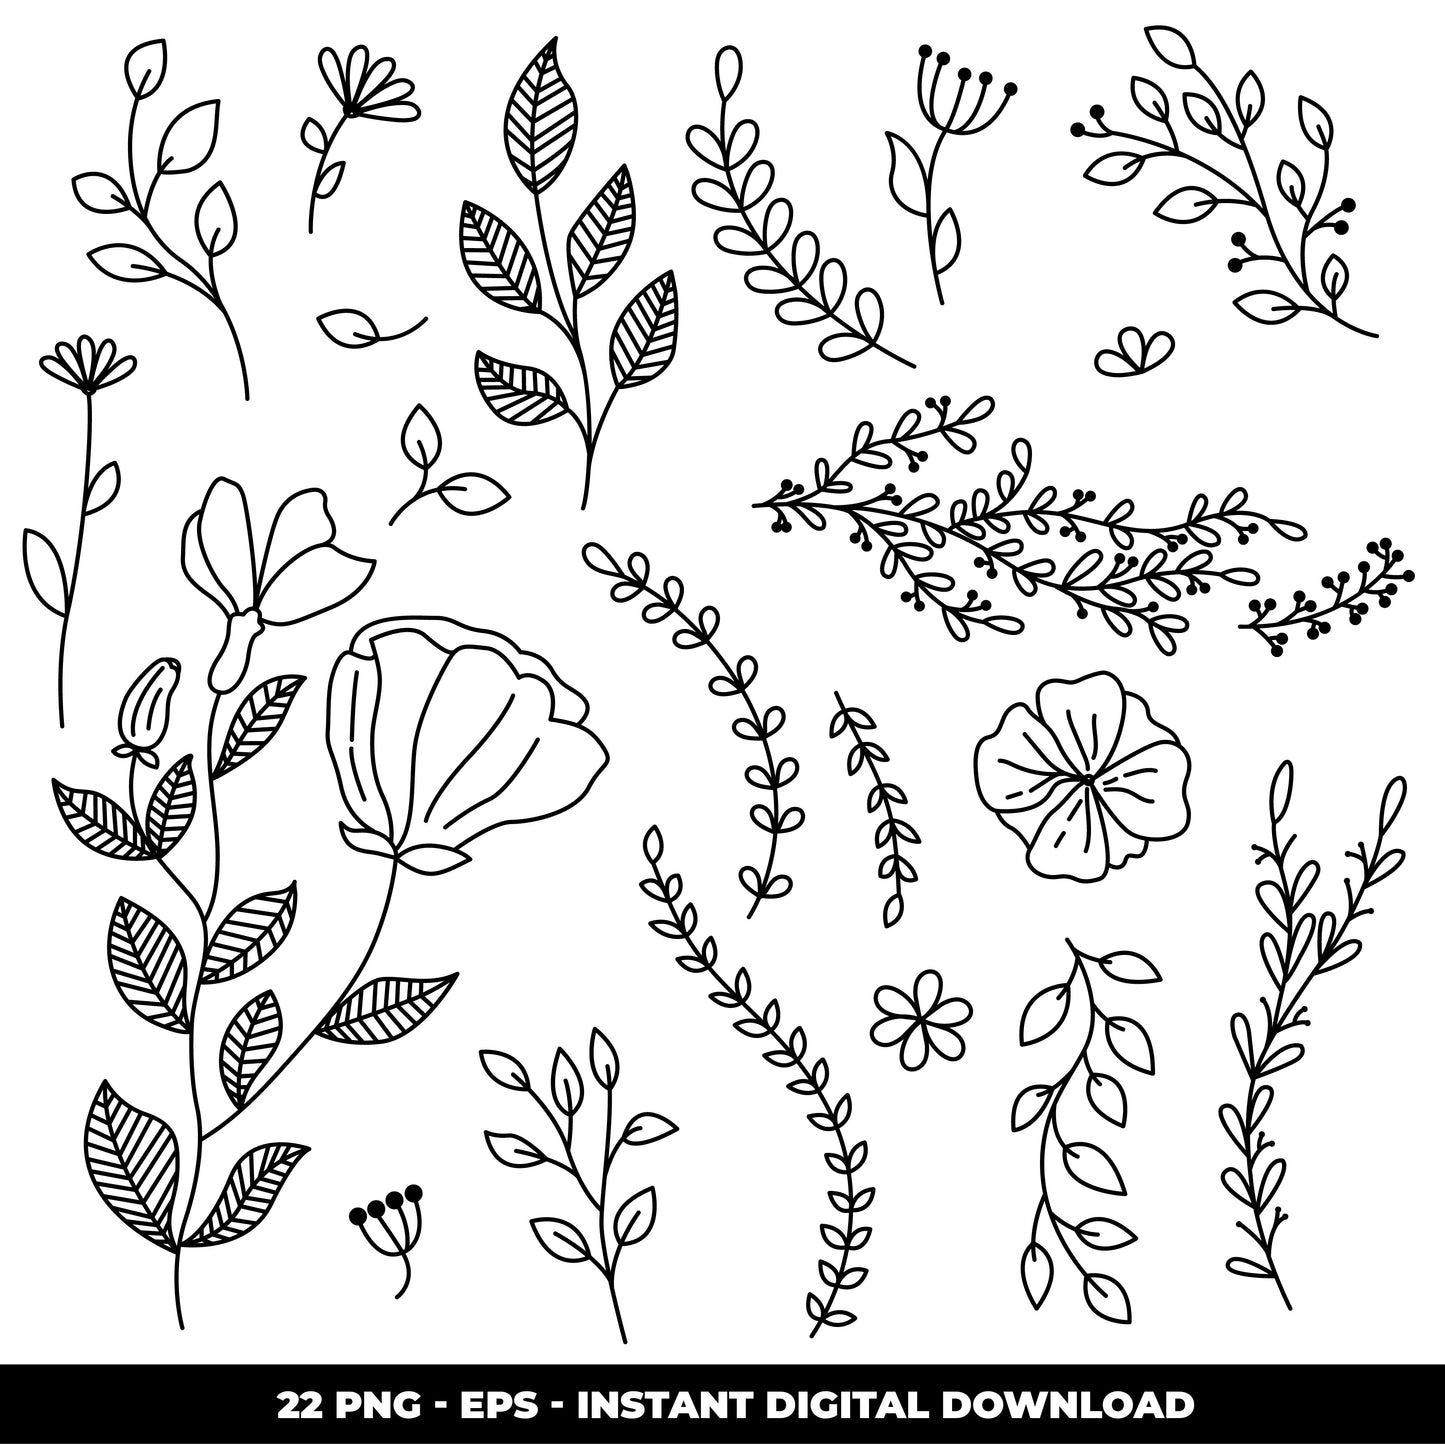 COD1245  Flowers doodle cliparts, Succulent SVG, CACTUS SVG, House Plants Clipart, Terrarium Cactus Art, Cactus Doodles Clipart, Digital Stamp